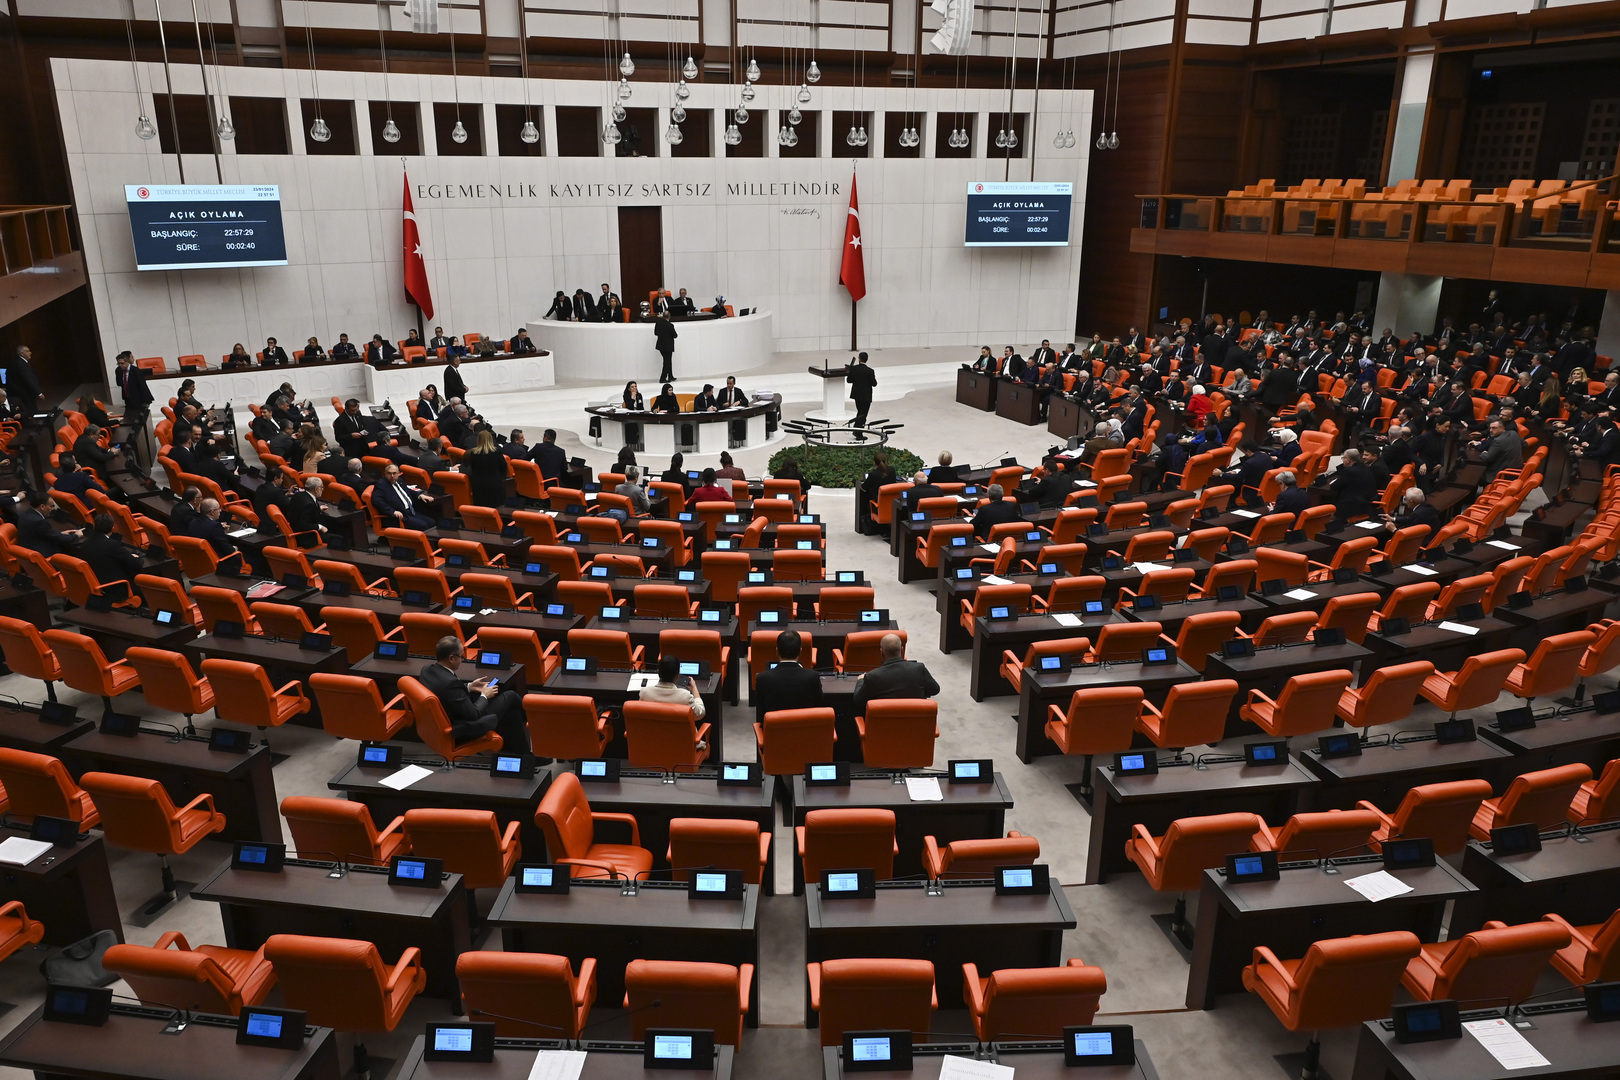 البرلمان التركي يصادق على انضمام السويد للناتو